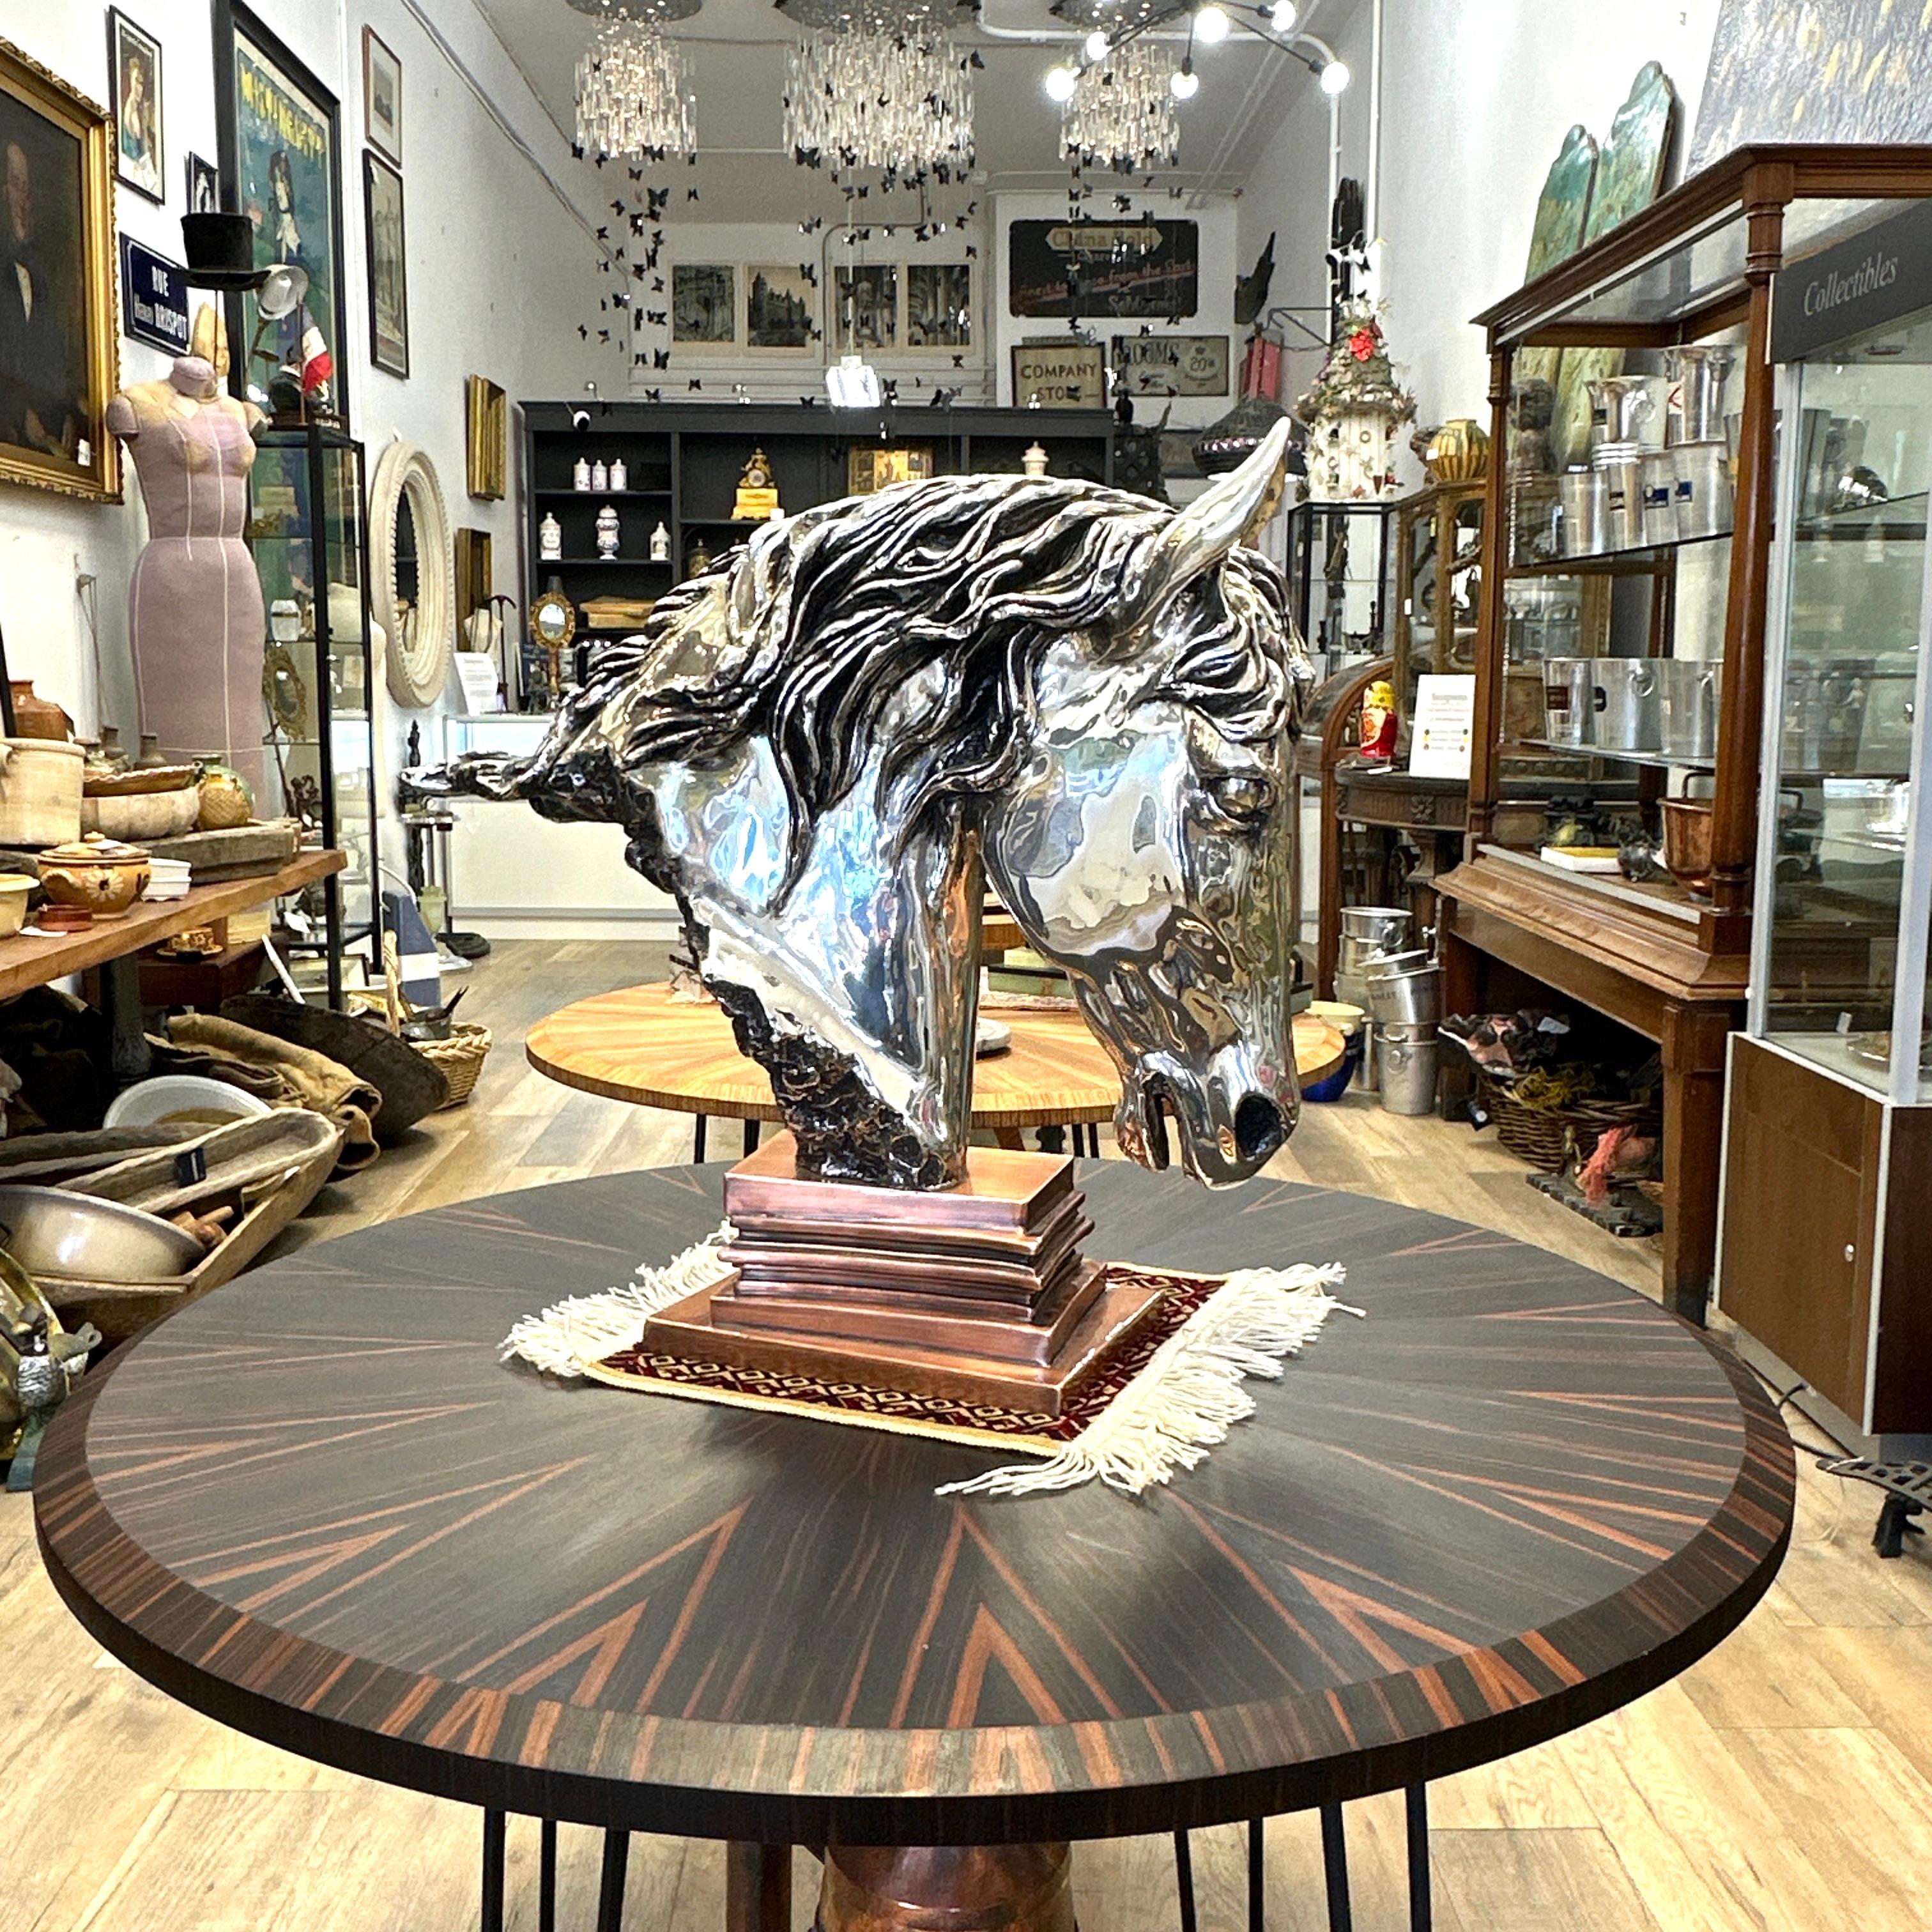 Voici une sculpture de tête de cheval en métal argenté réalisée par D'argenta et l'artiste Ricardo del Rio. Cette sculpture merveilleusement détaillée mérite une place d'honneur dans votre maison. Sa tête est inclinée dans une position qui évoque